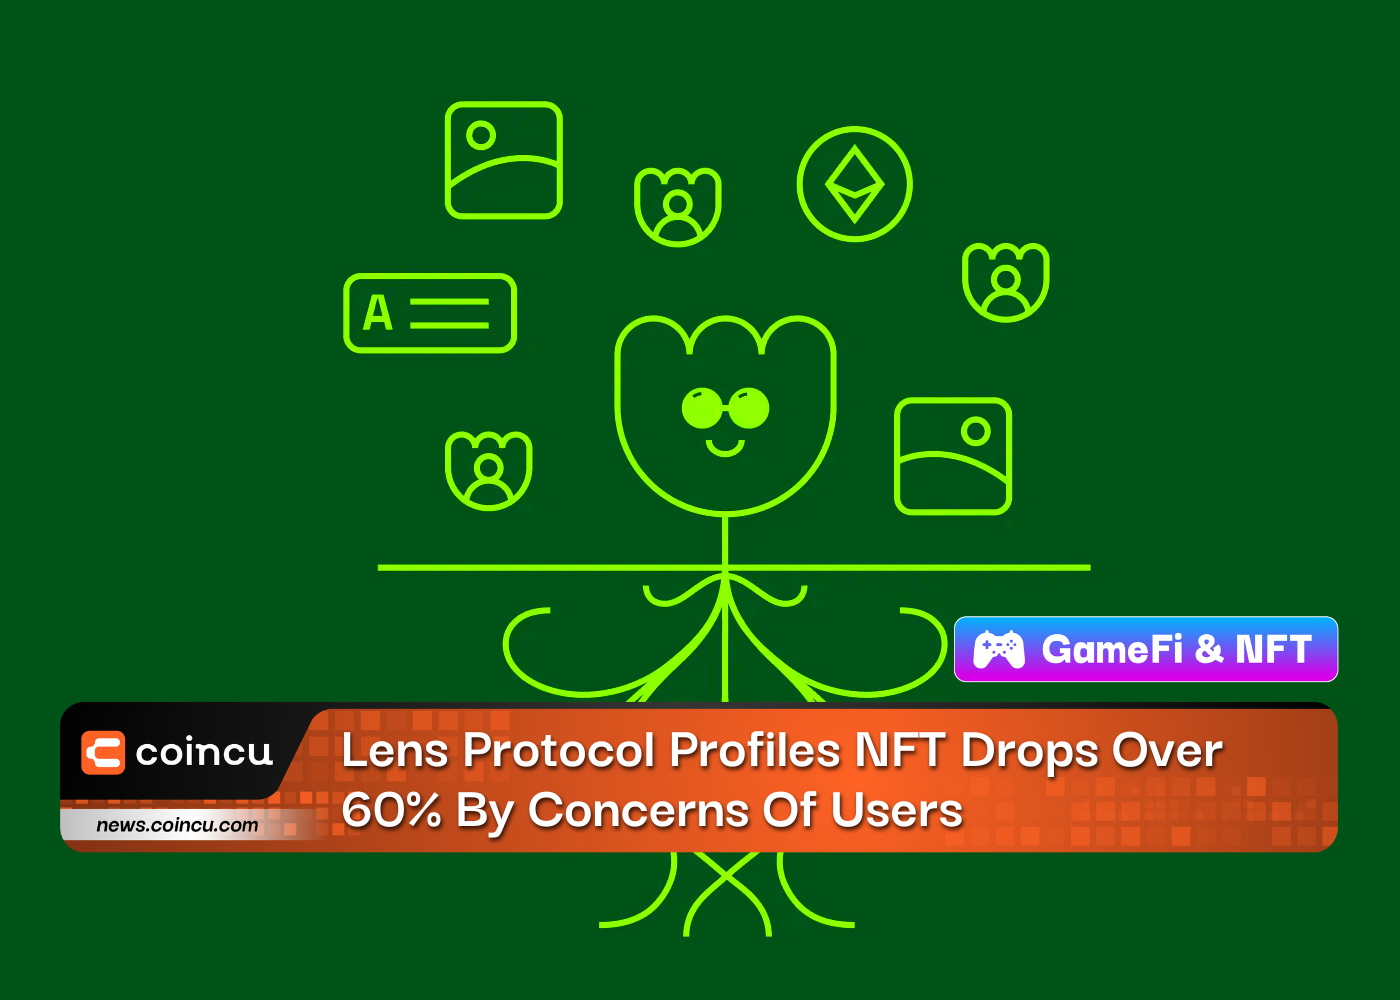 렌즈 프로토콜 프로필 NFT는 사용자의 우려로 60% 이상 하락